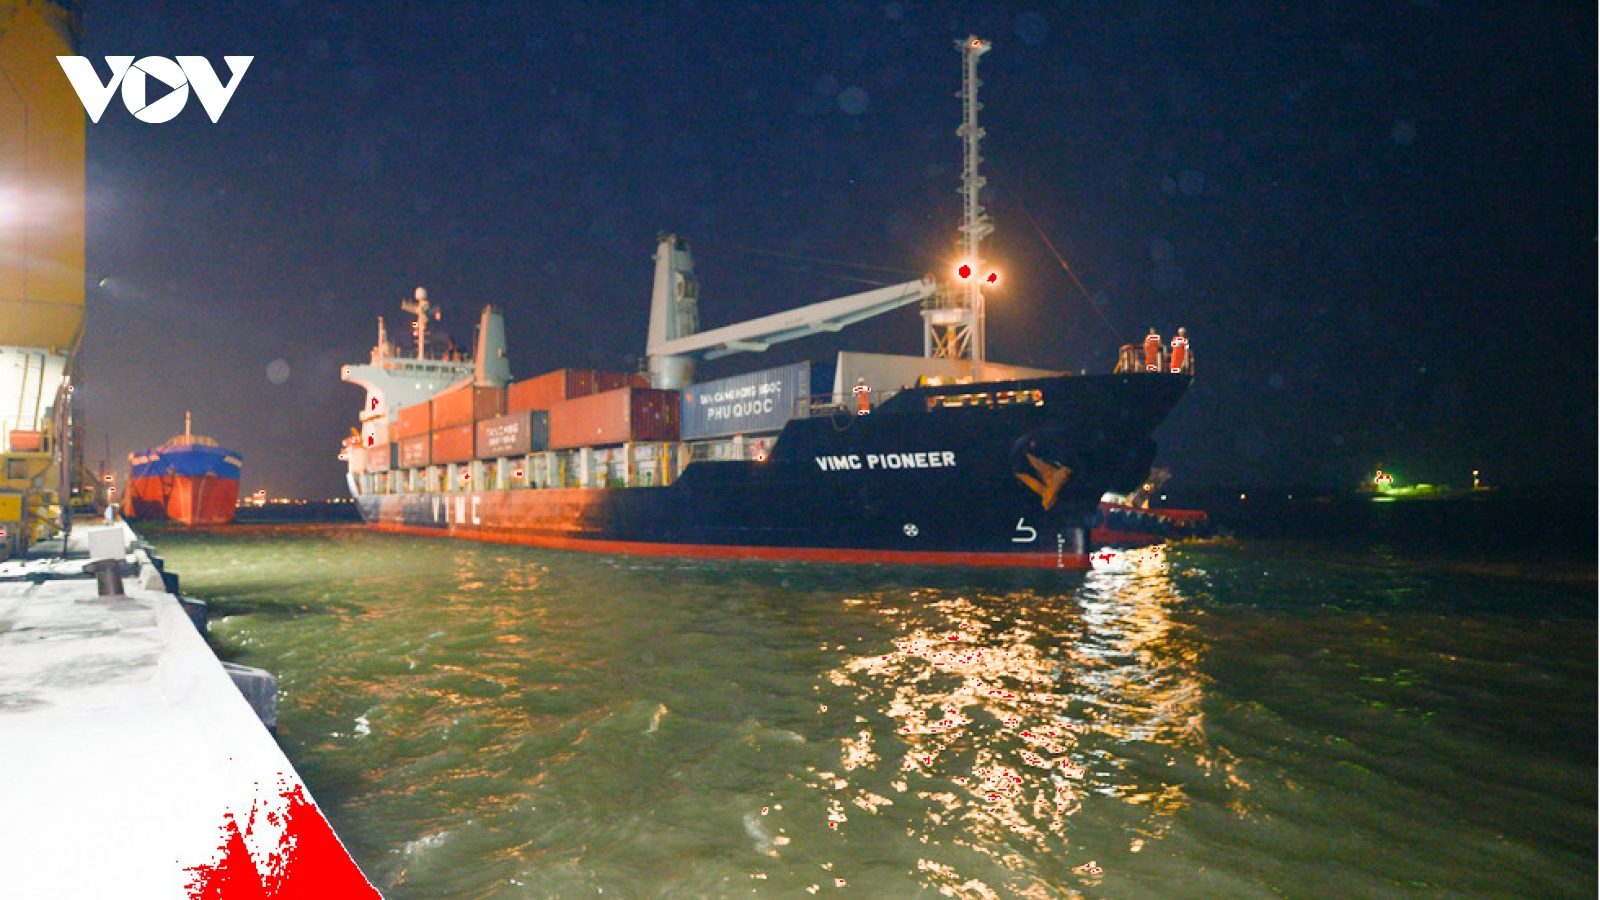 Đón tàu trọng tải lớn vào Cảng Cần Thơ giúp khơi thông hàng hoá 